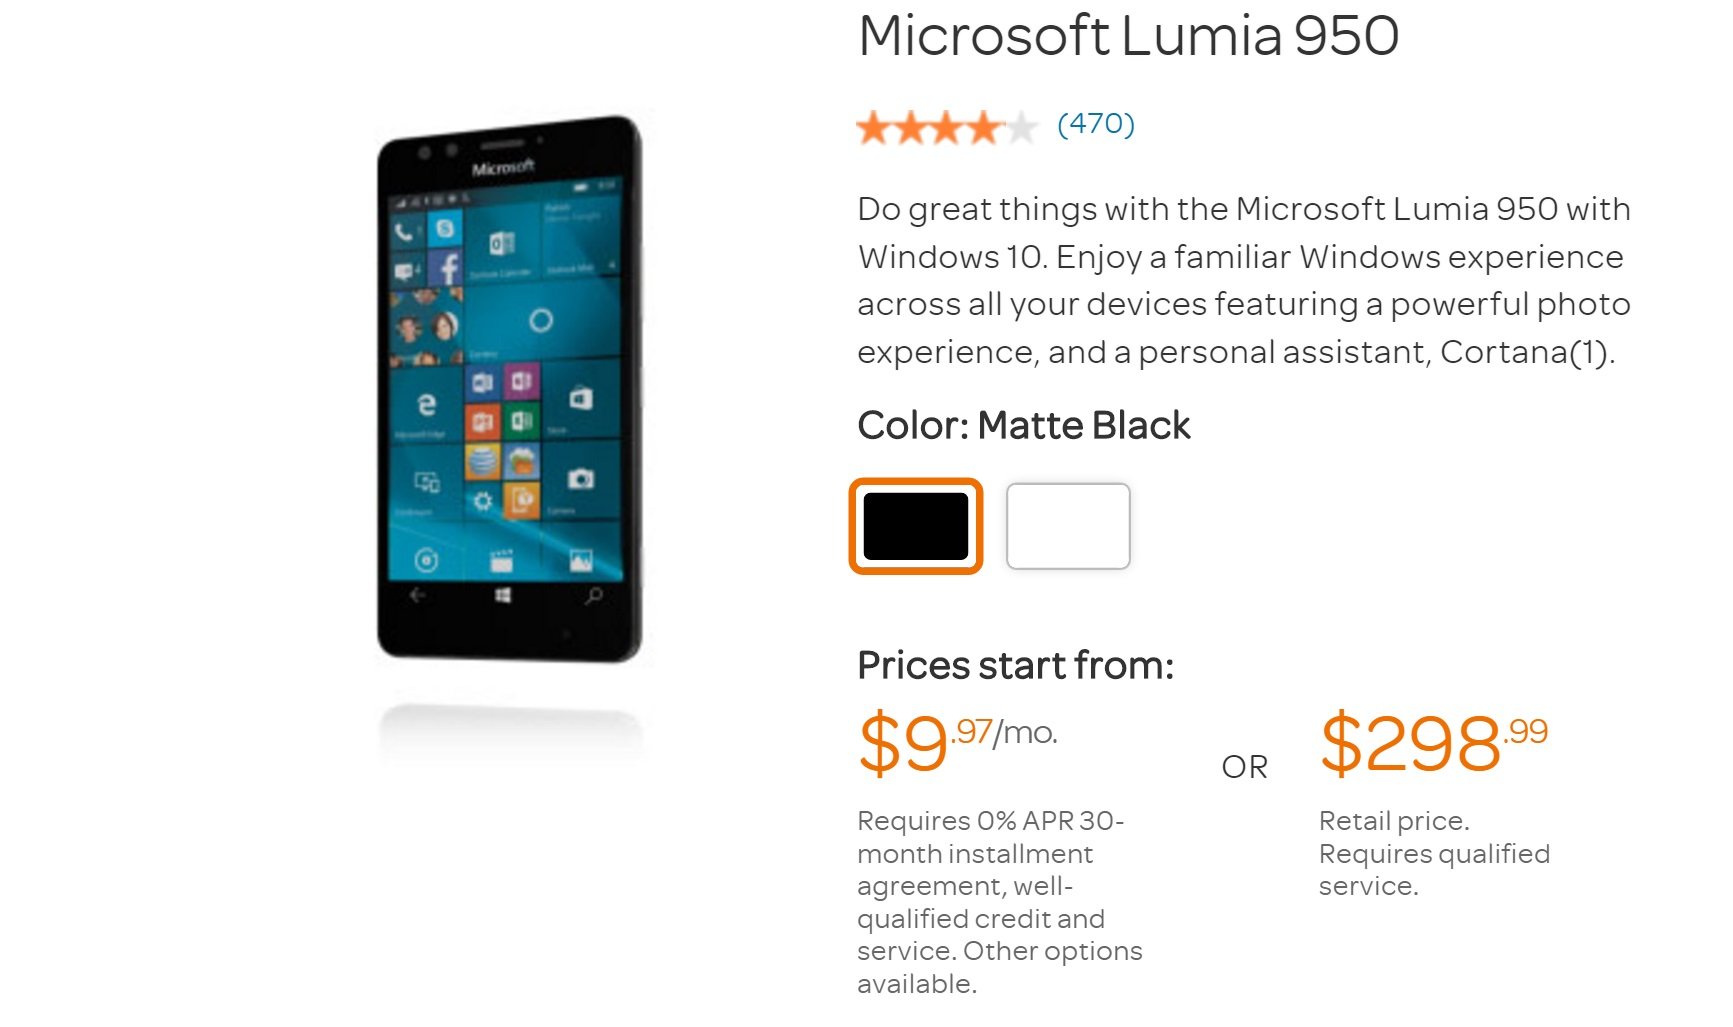 att lumia 950 deal